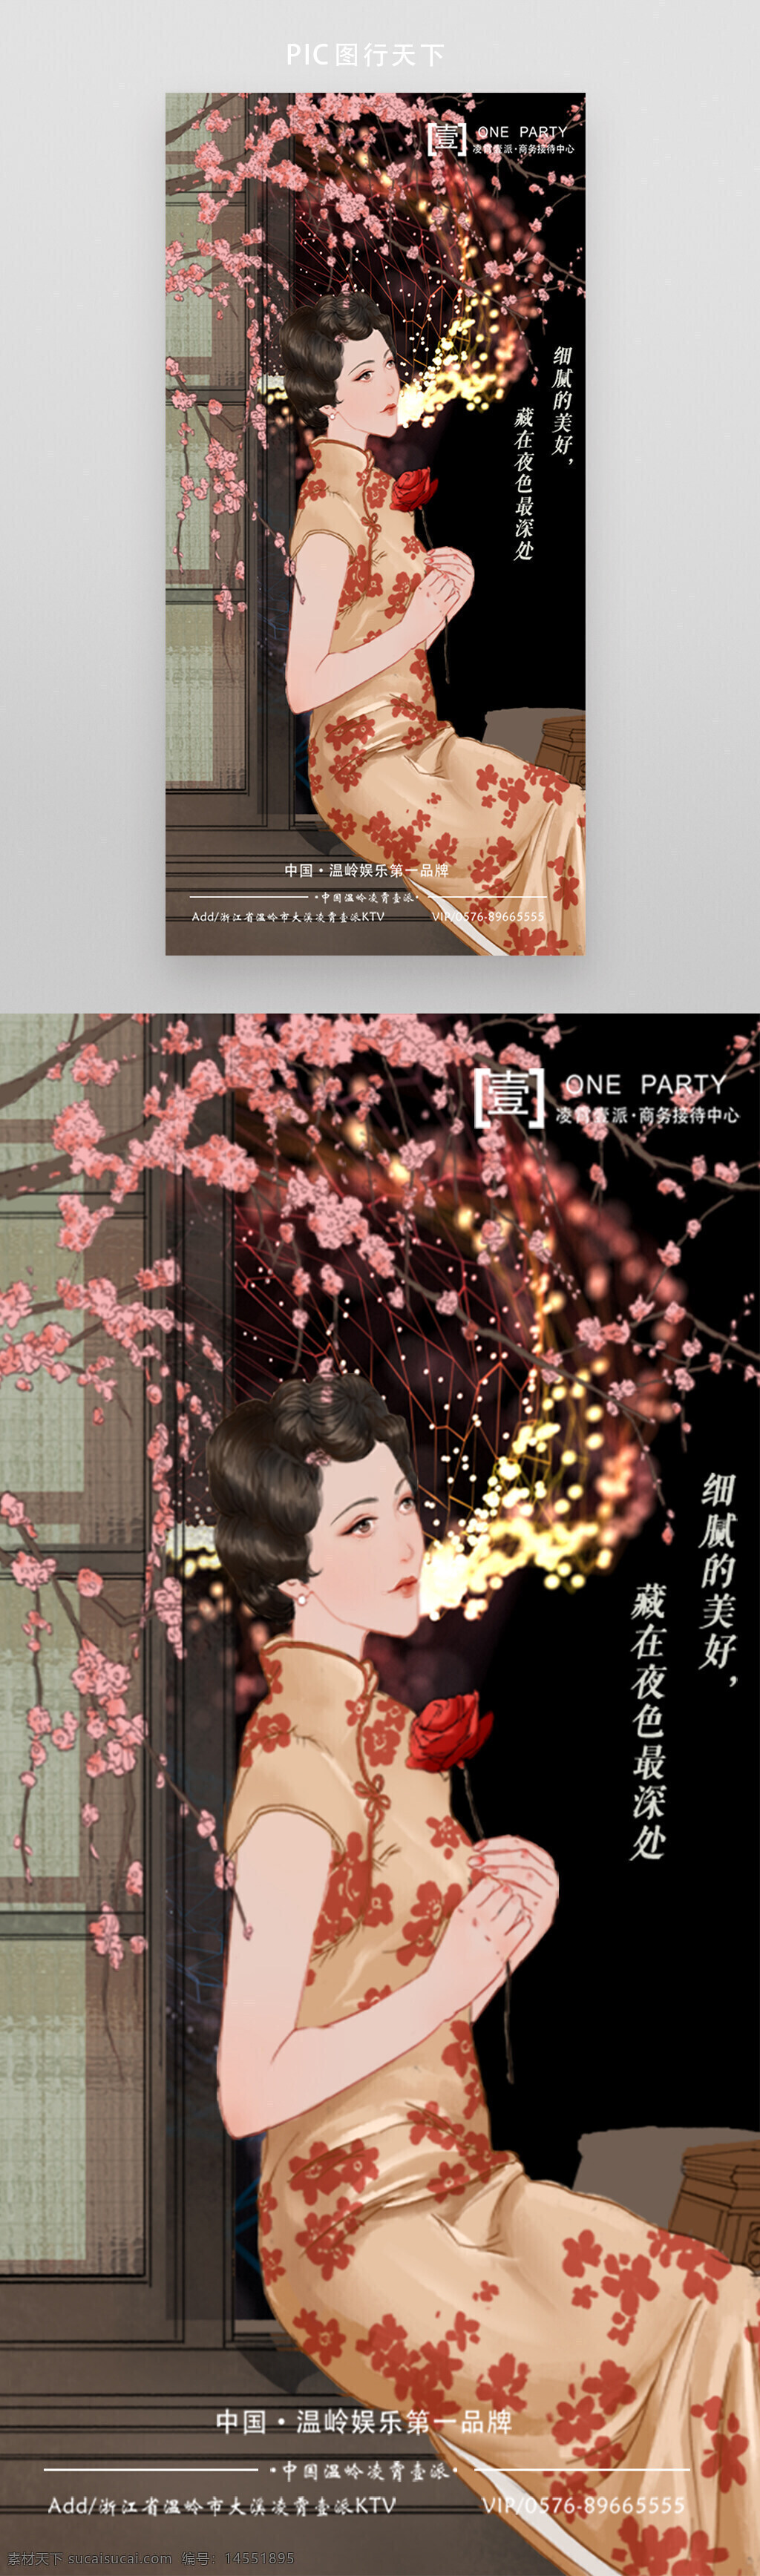 中国风 旗袍 礼服 高级 定制 展板图片 女性
